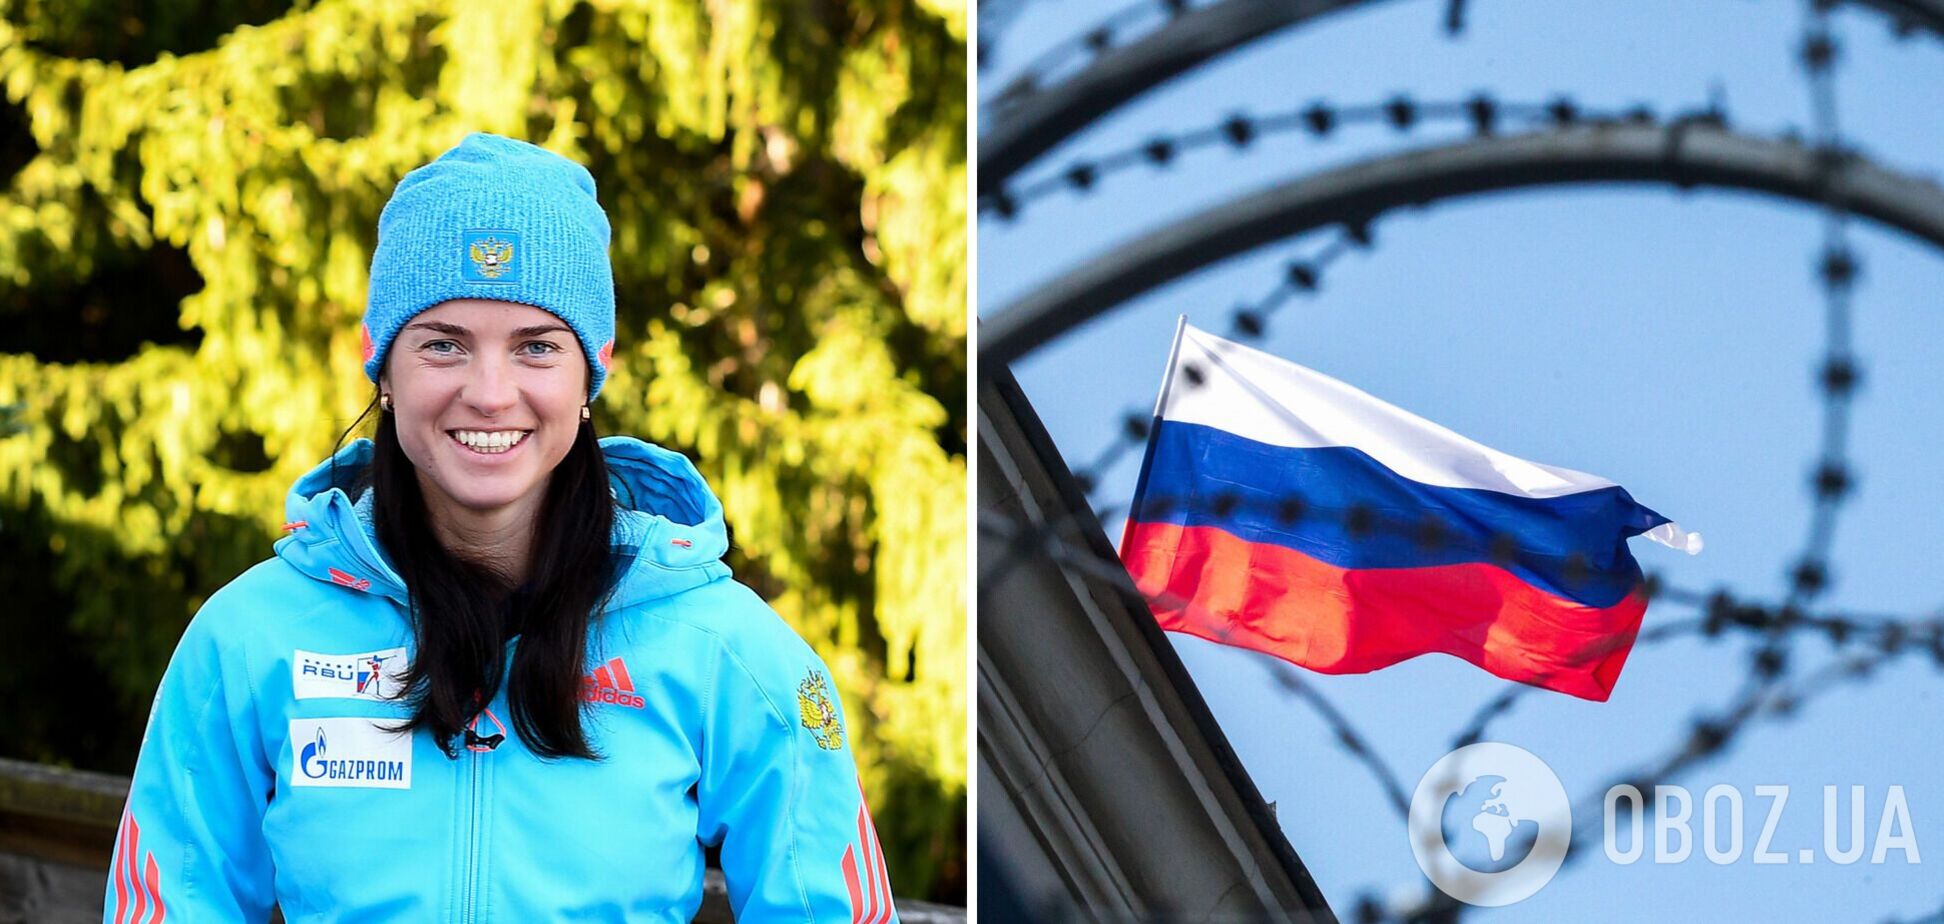 'Як в якомусь концтаборі': чемпіонка ОІ з РФ поскаржилася на умови допуску росіян до Олімпіади